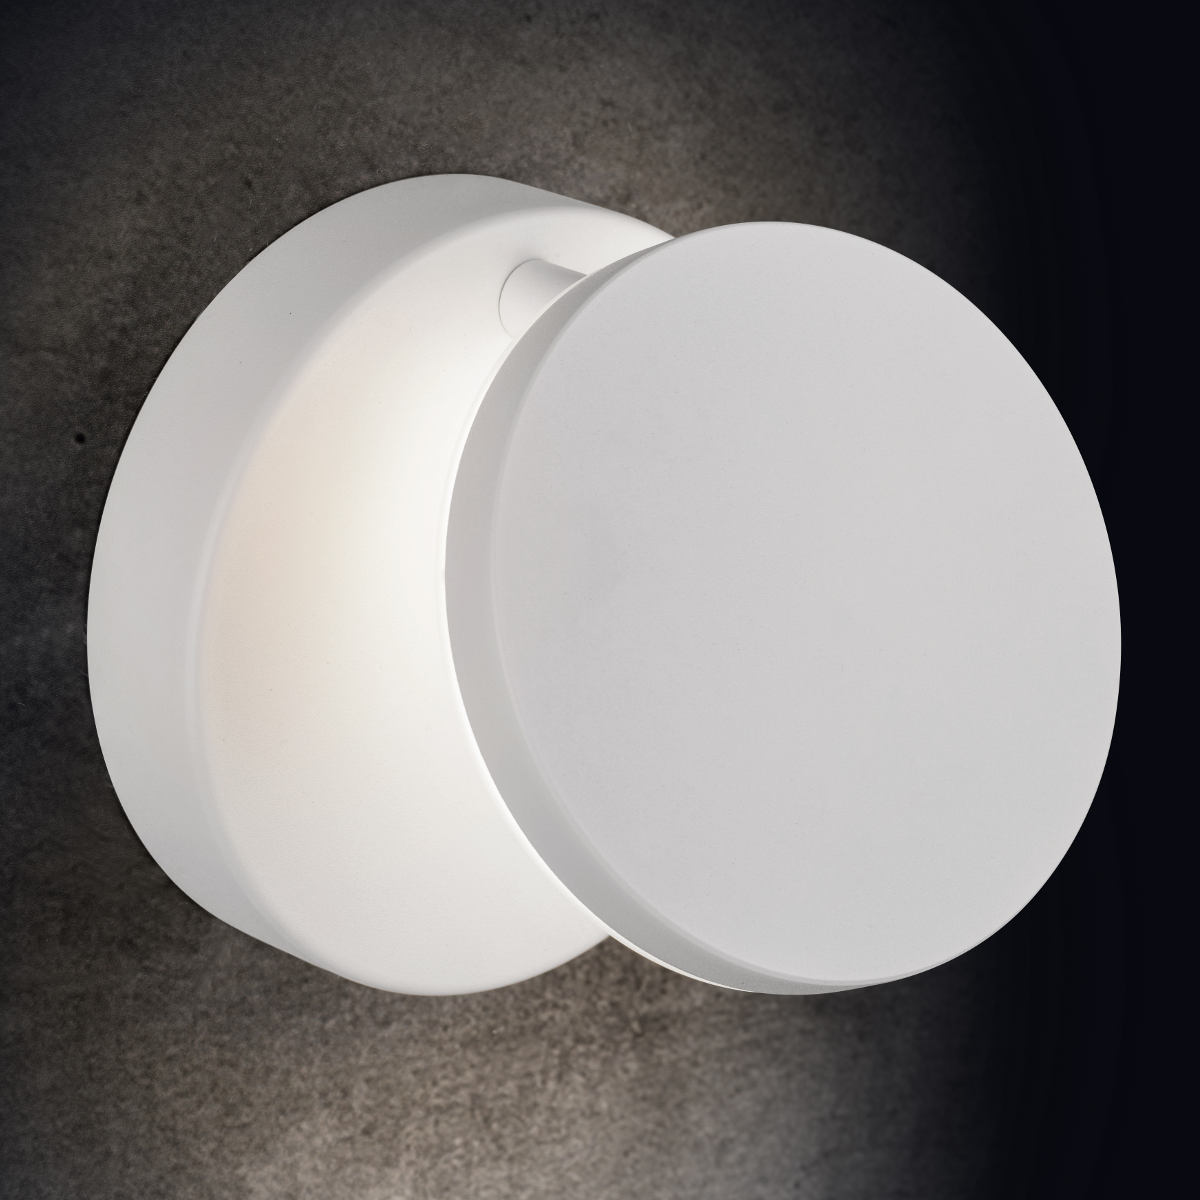 Einstellbare, minimalistische LED-Wandleuchte PLANO, mit Dimmer: Ausführung weiß Struktur, ohne Tastdimmer